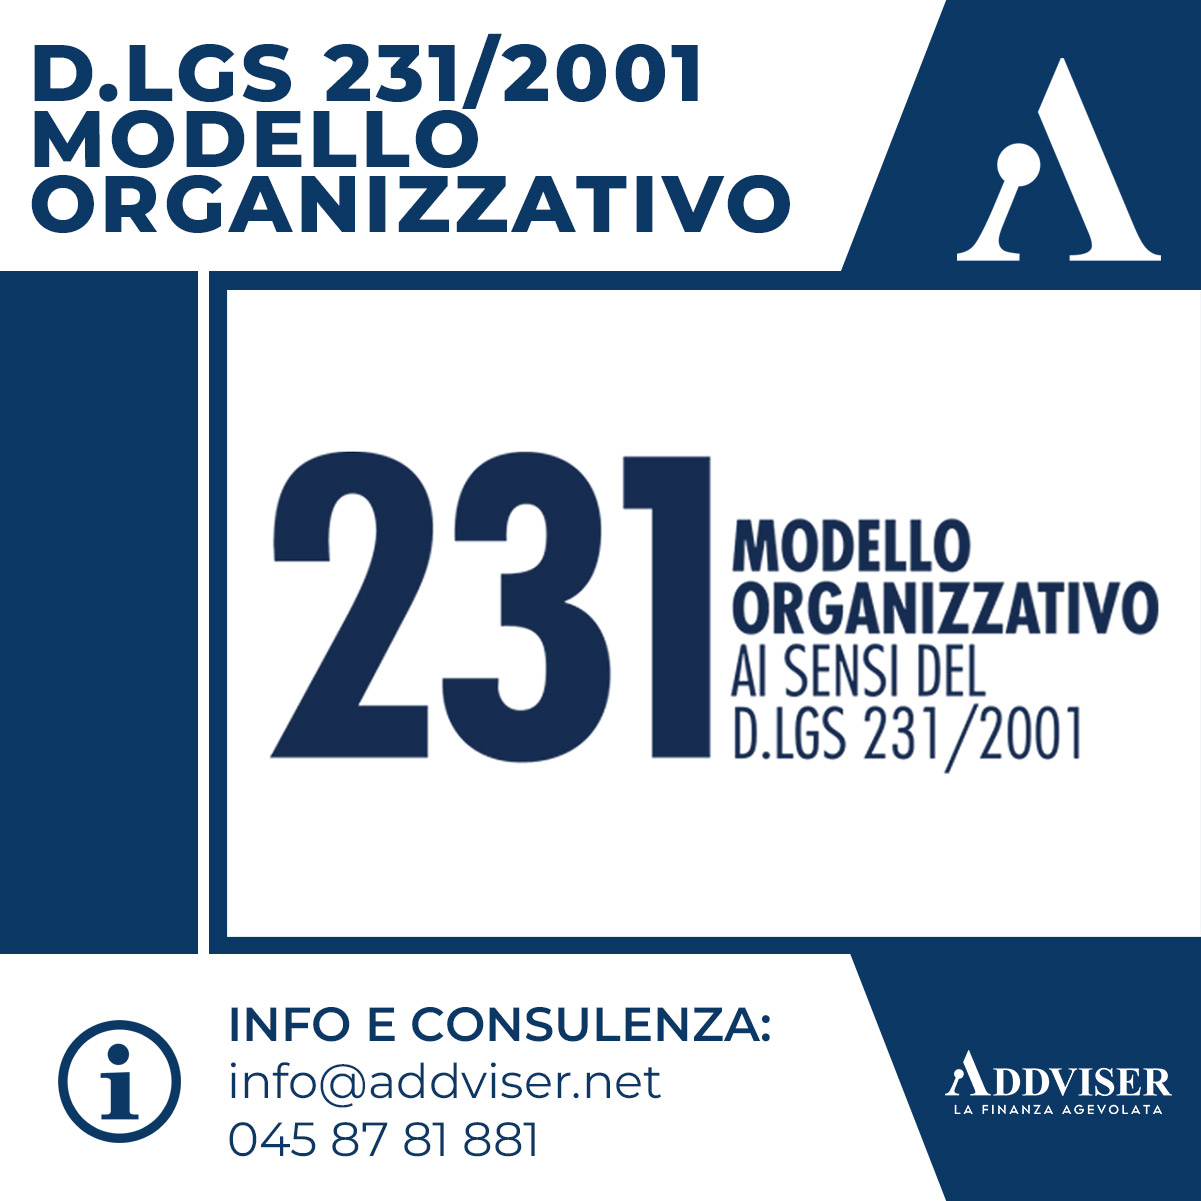 D.LGS. 231-2001